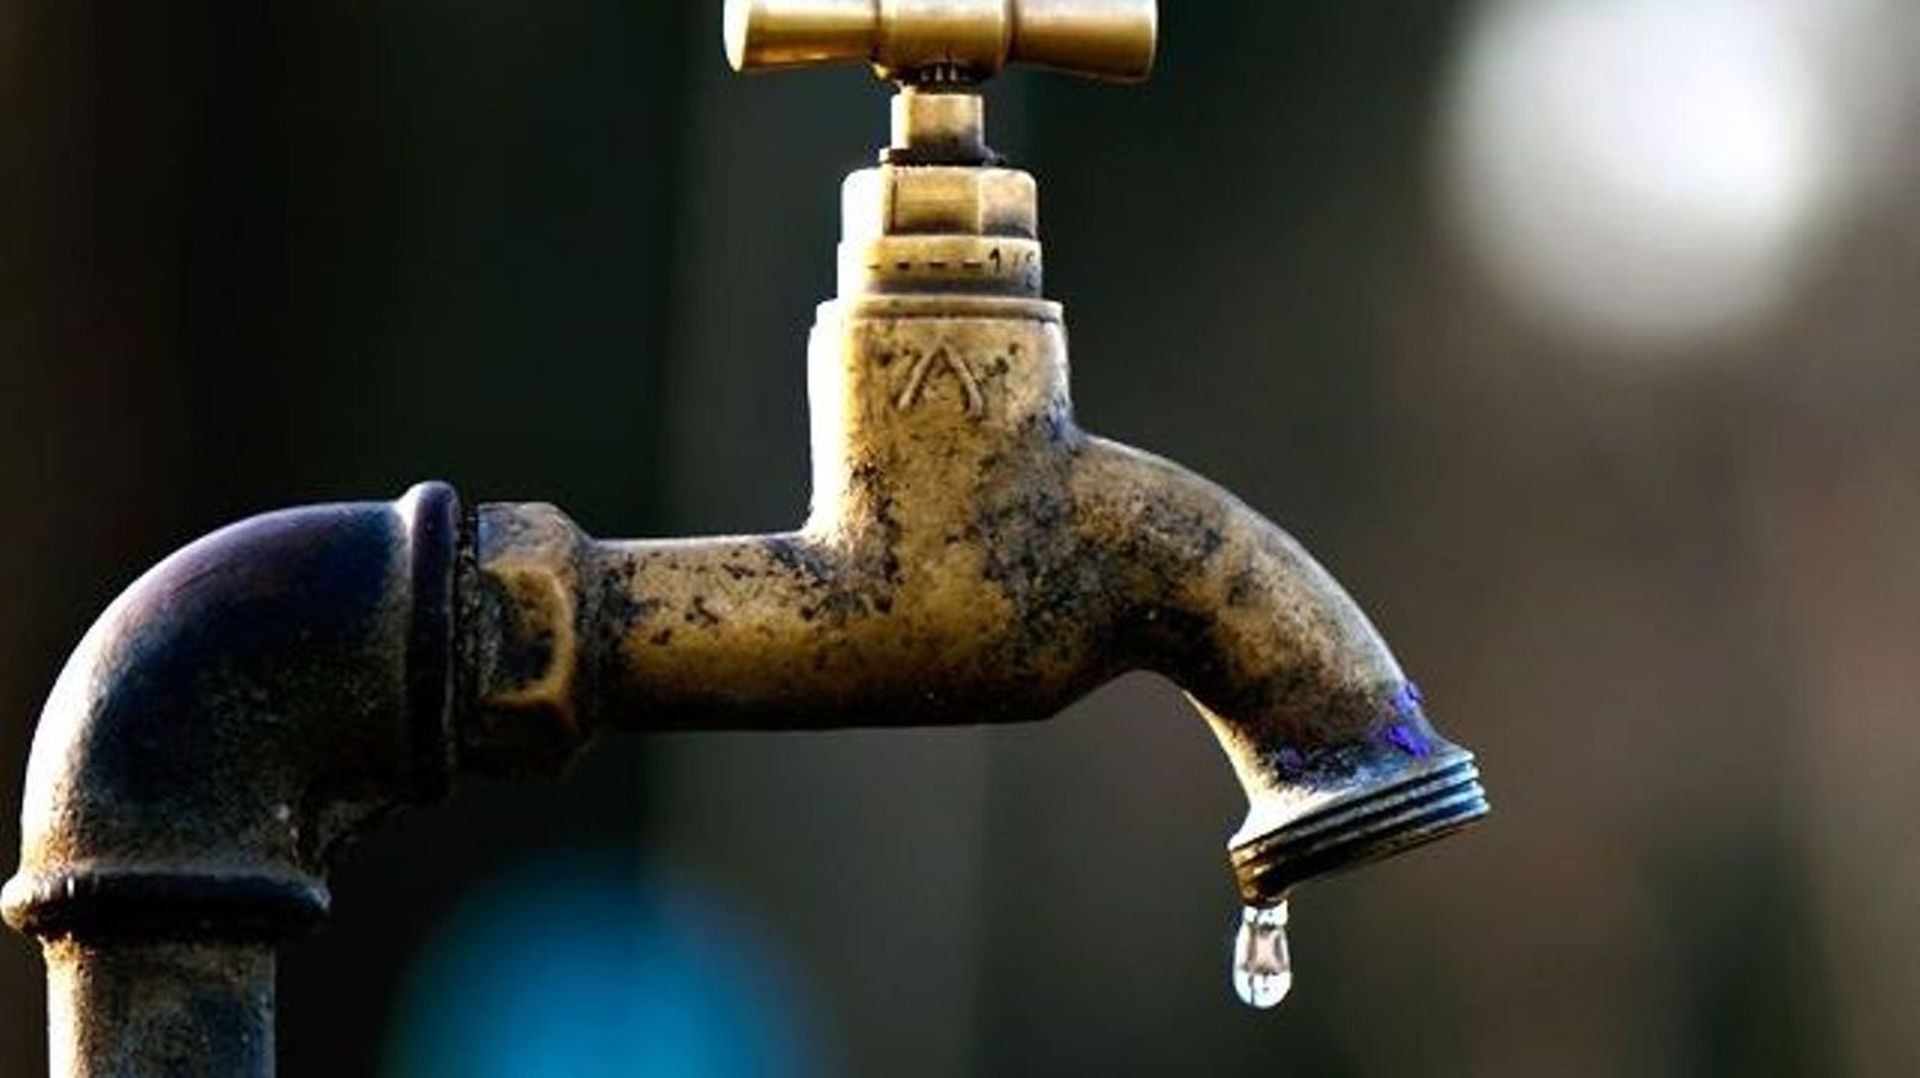 Pénurie d'eau en Flandre: "L'eau est plus déterminante pour nos vies que le coronavirus"